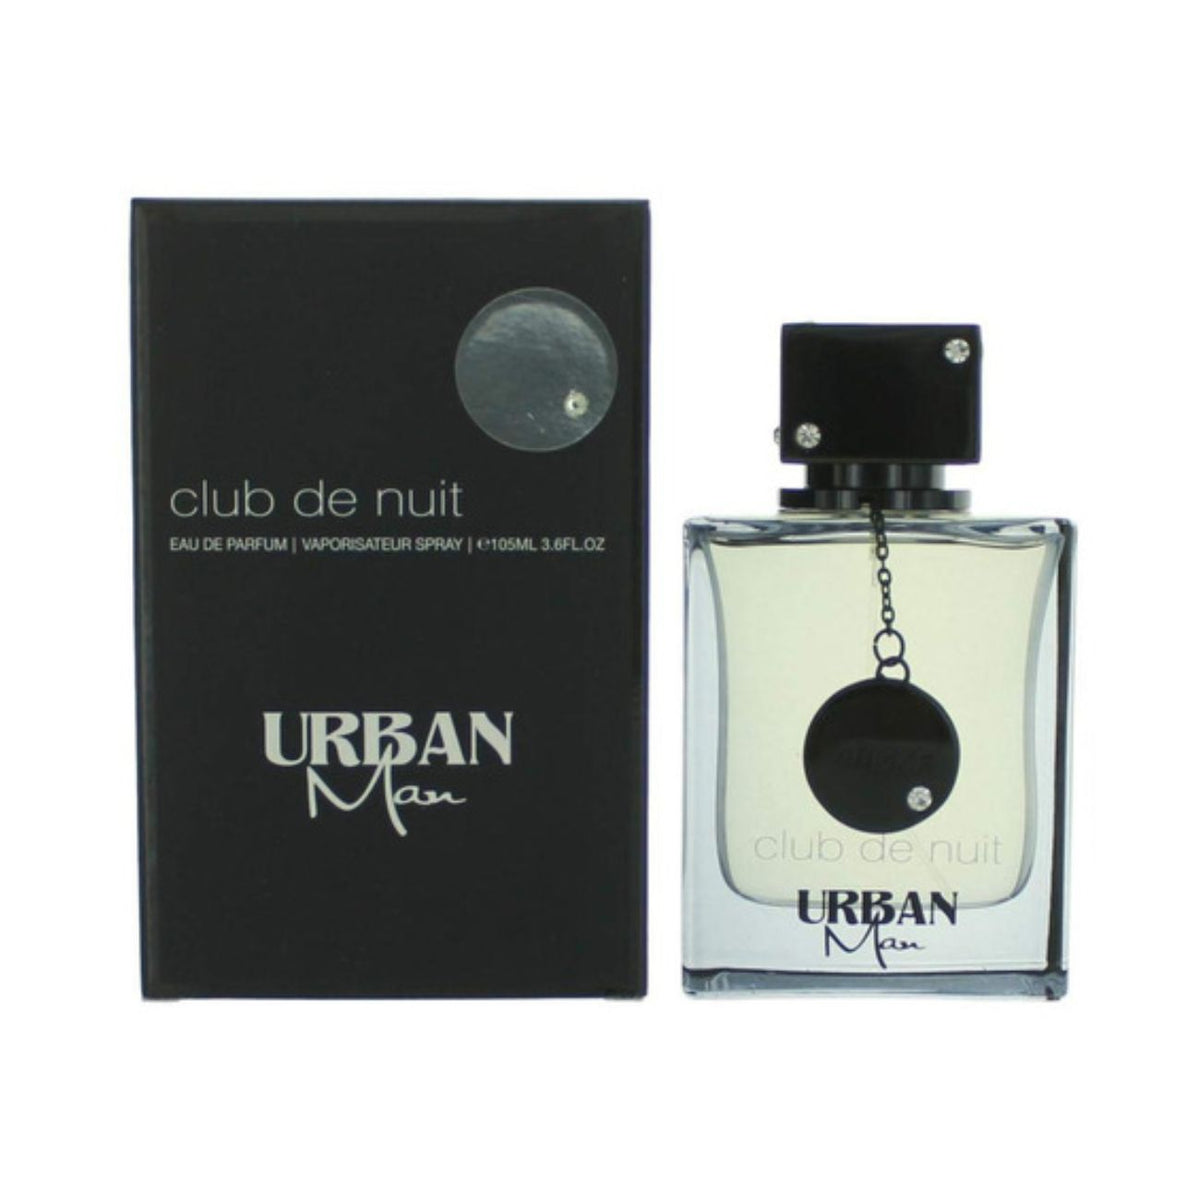 Perfume  club de nuit urban man Eau de parfum 105 ml